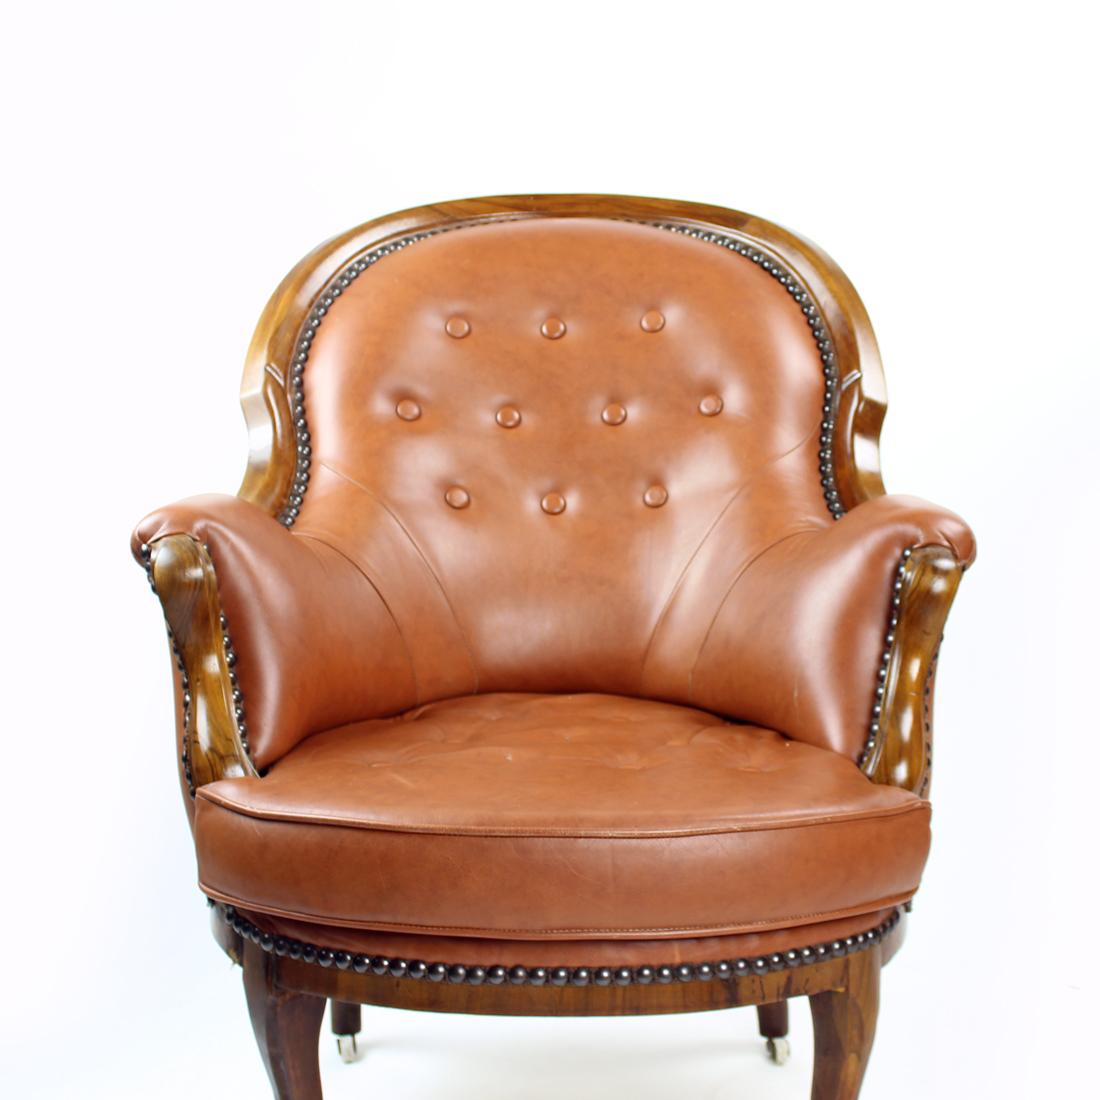 Schöner Sessel mit tollen Details. Der Stuhl wurde in den 1950er Jahren in der Tschechoslowakei hergestellt. Der Stuhl besteht aus einem Holzgestell aus Nussbaum und einer Sitzfläche und Rückenlehne aus Kunstleder. Besonders schön sind die